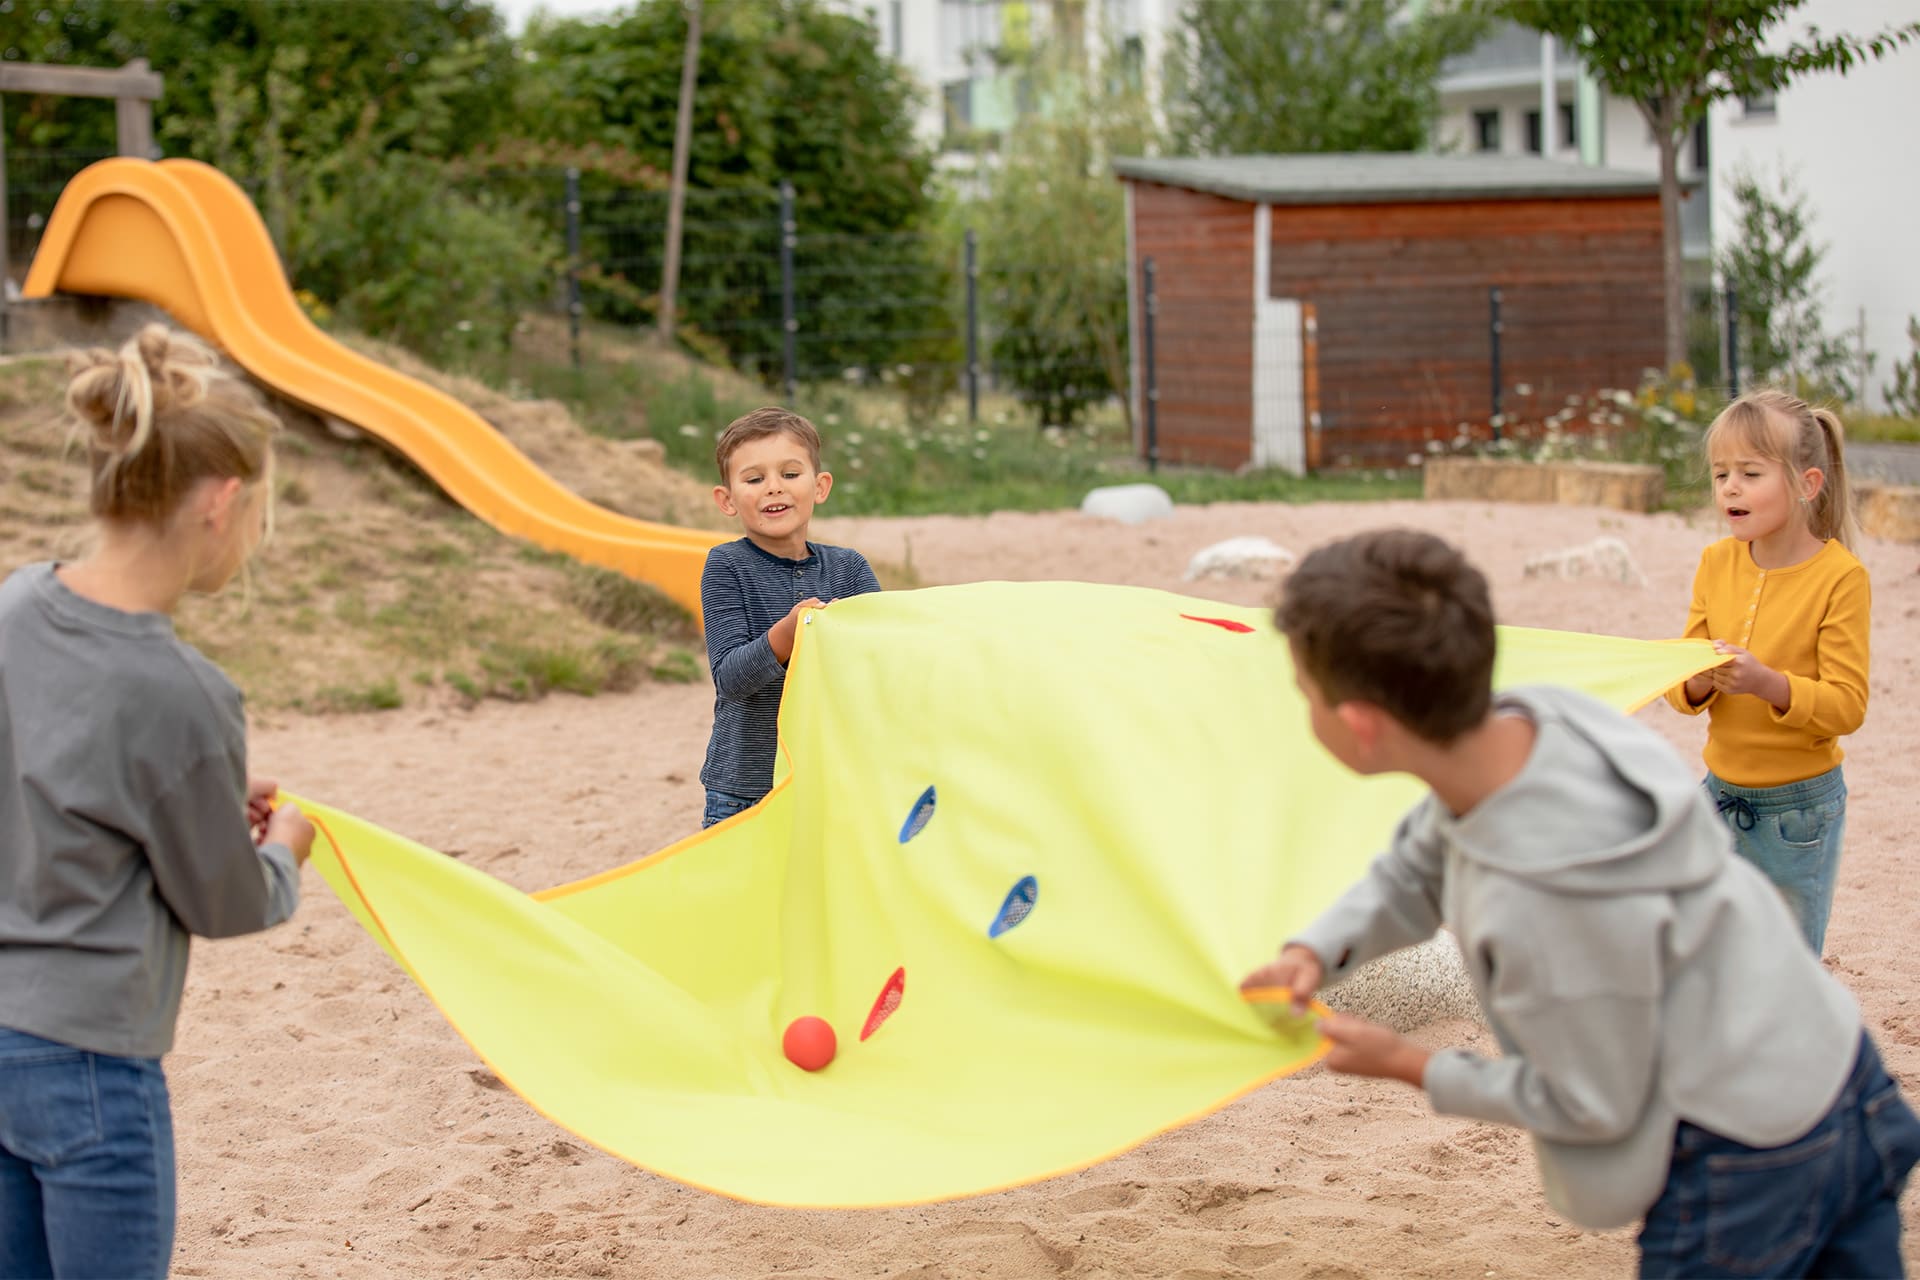 Teamfähigkeit | 2 | Image | Tuchgolf | Kinder spielen mit gelben Tuchgolf auf einer Sandfläche. Gelbe Rutsche im Bildhintergrund